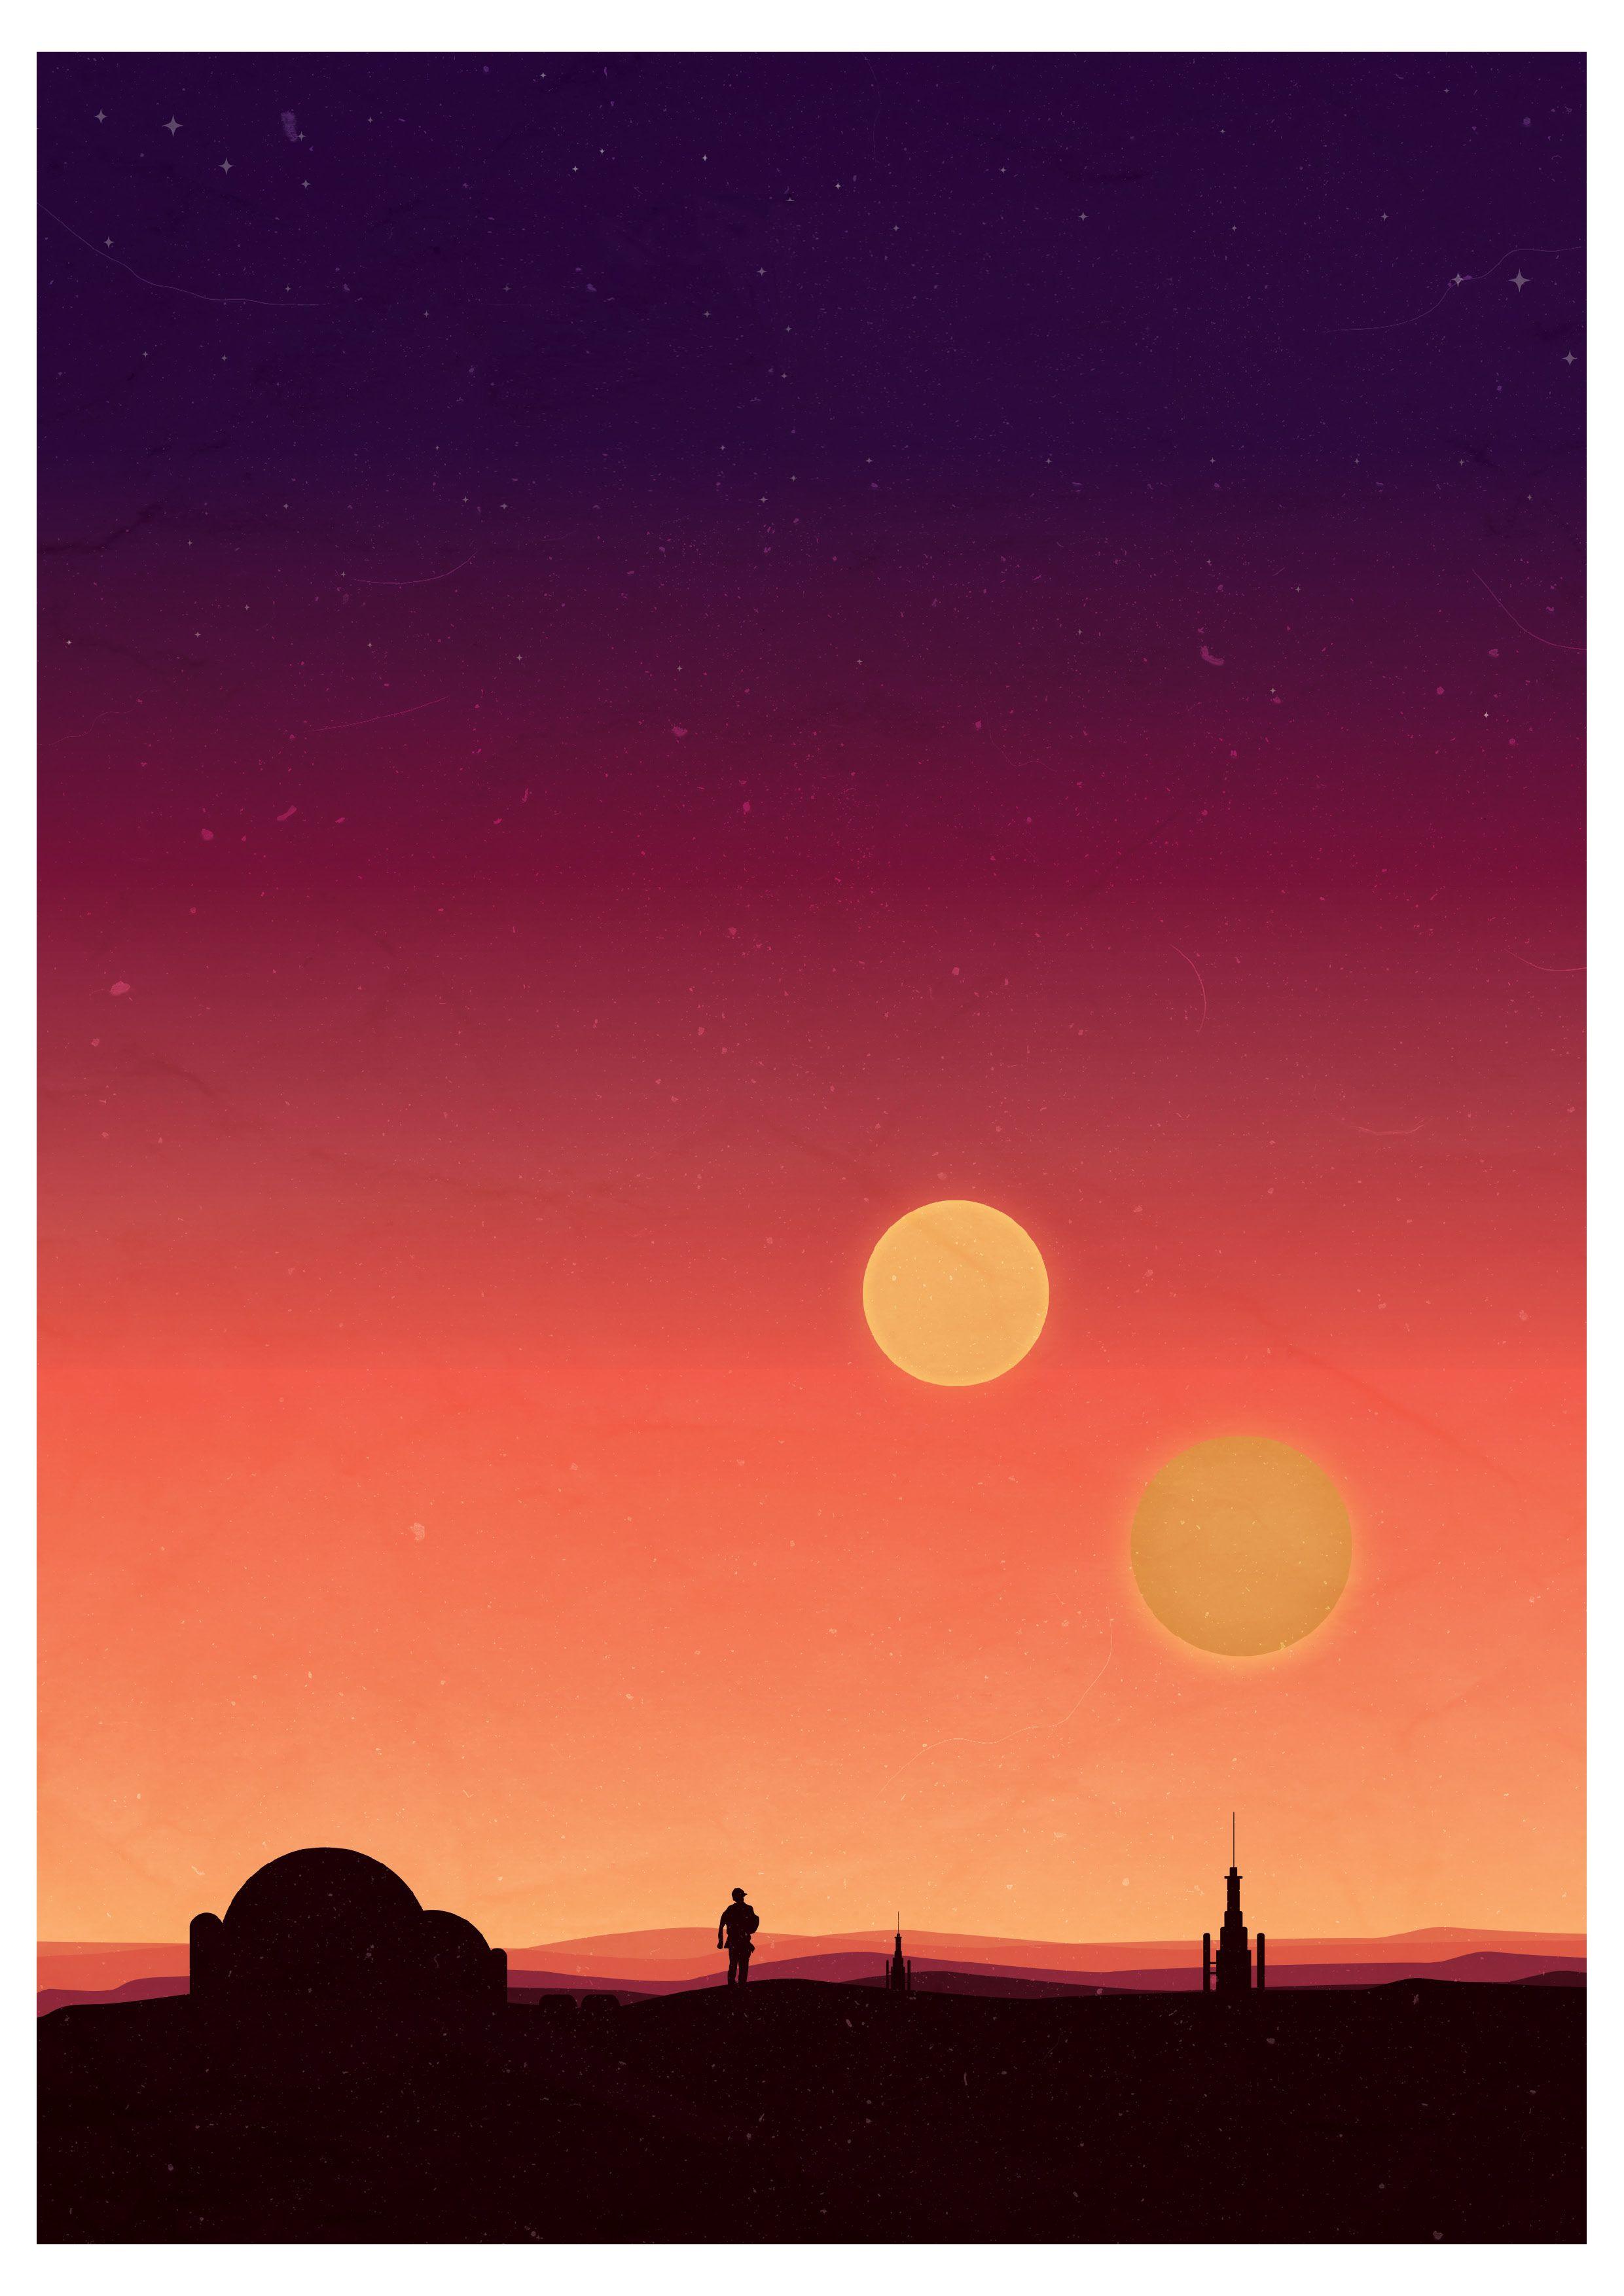 Minimalist Tatooine Wallpaper Free Minimalist Tatooine Background